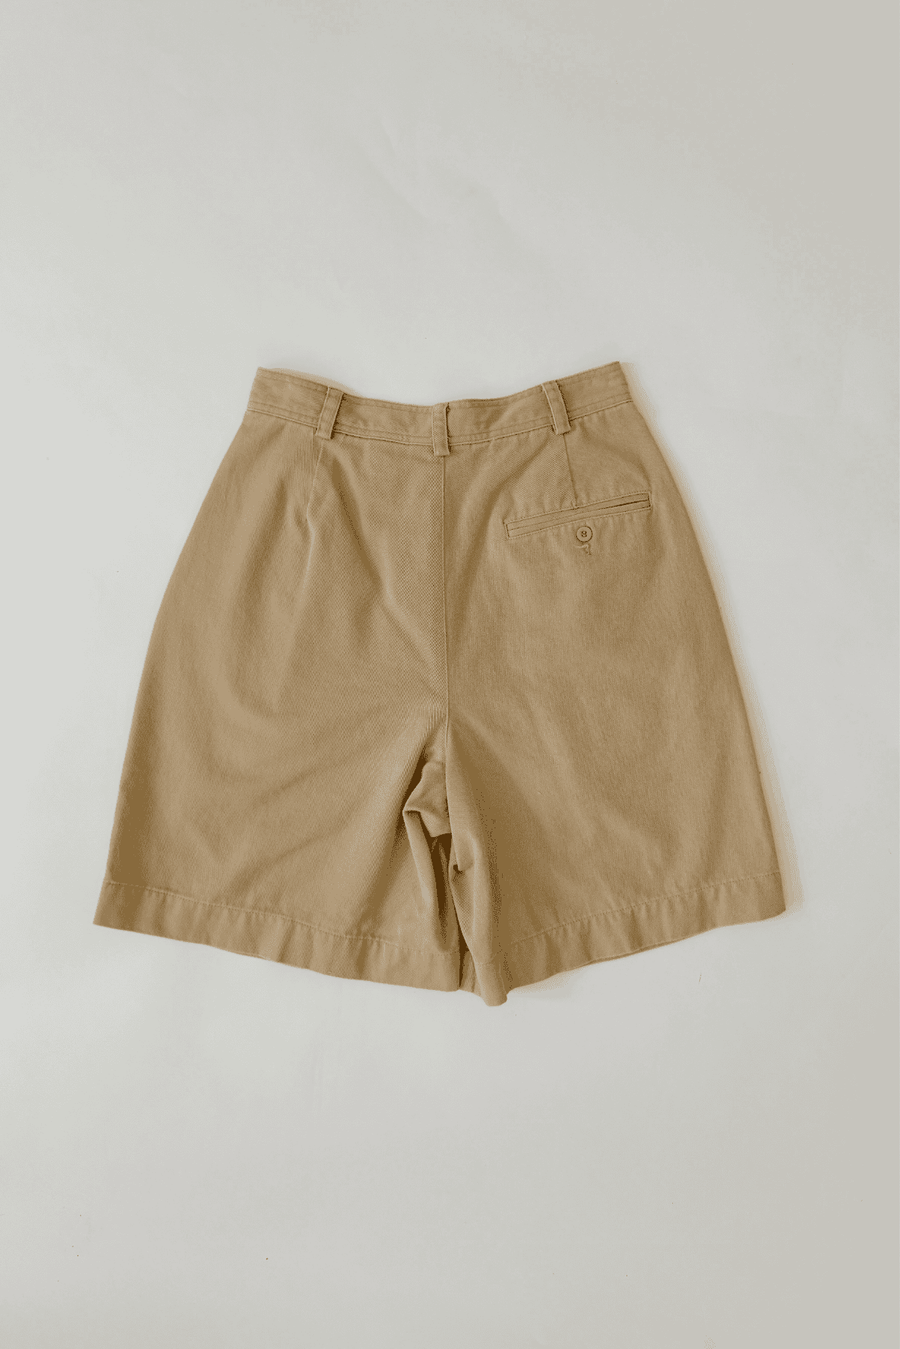 2000s Vintage Liz Claiborne Beige High Waist Shorts Size 4